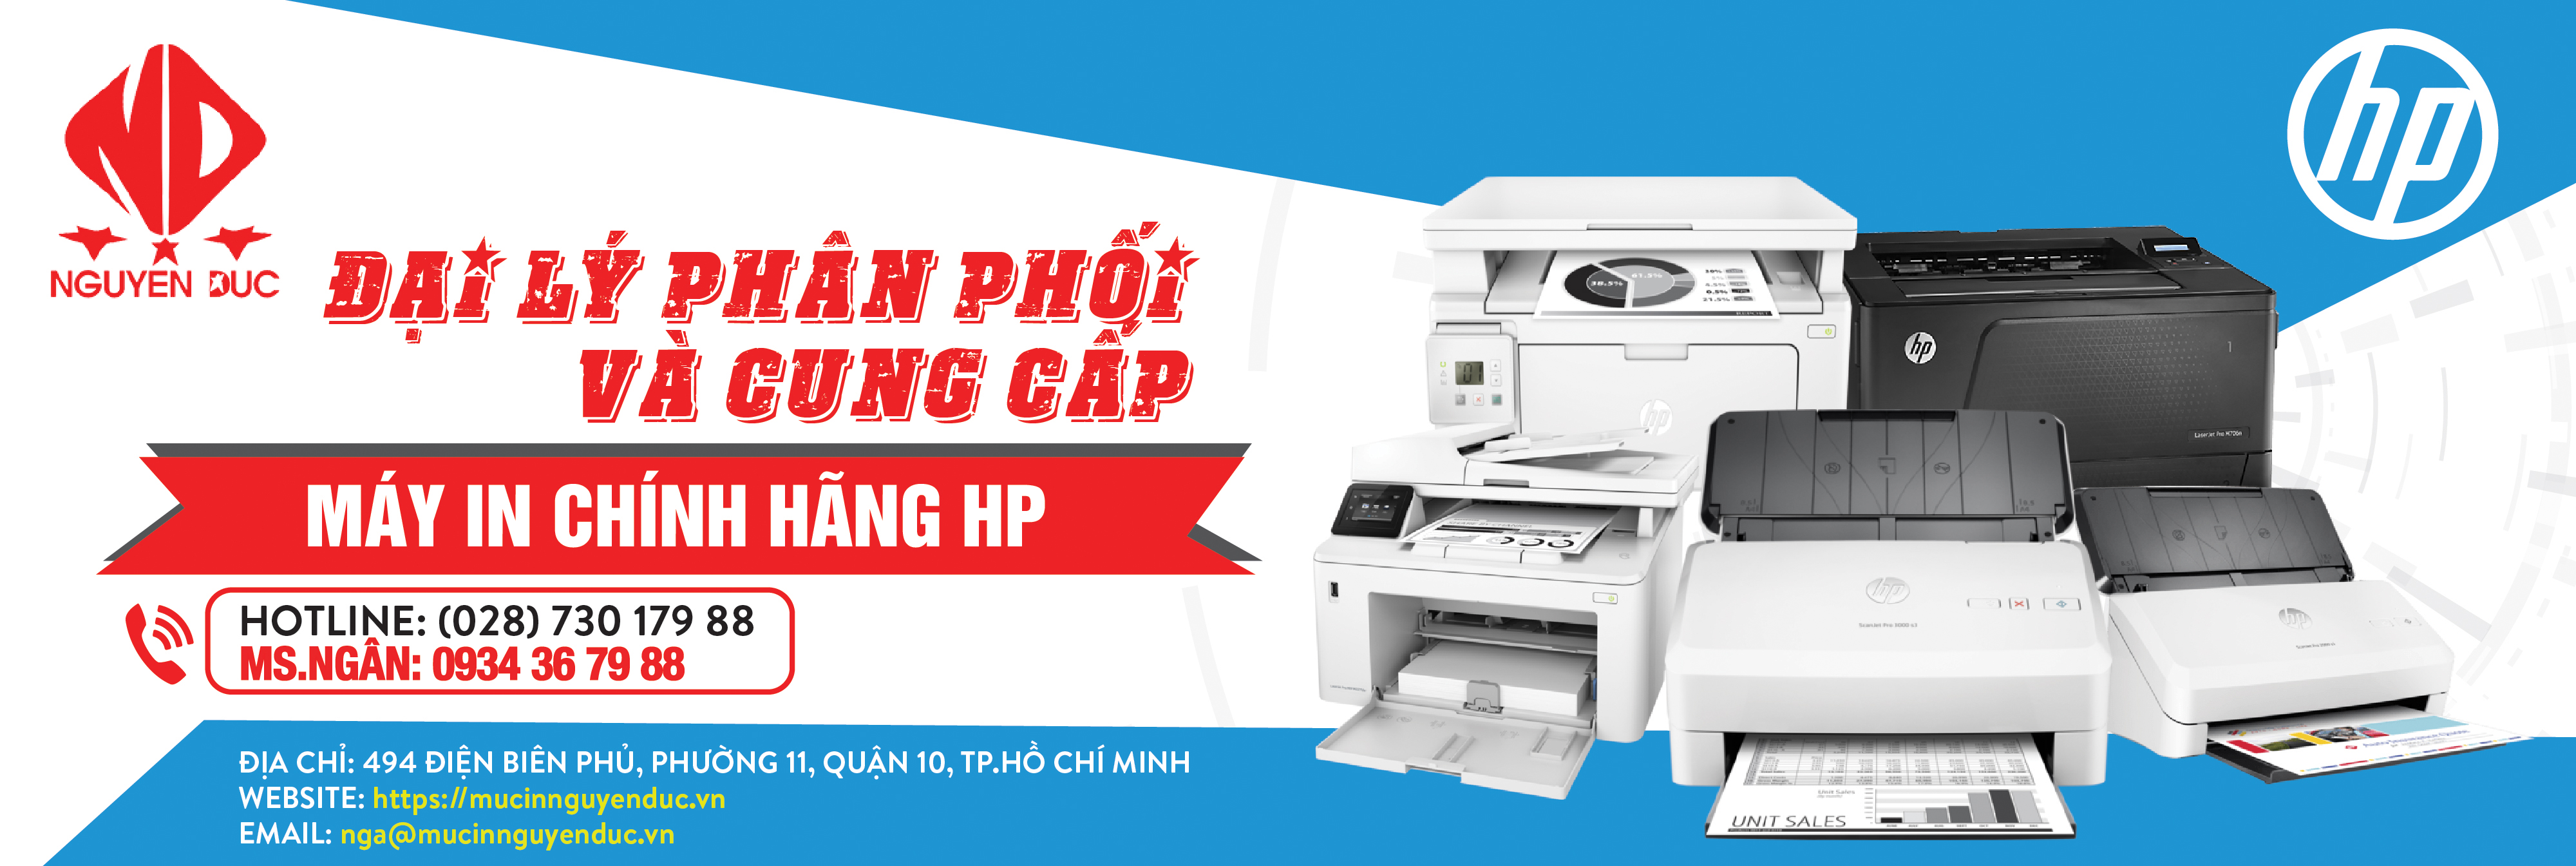 Đại lý phân phối máy quét tài liệu đảo mặt Epson WorkForce DS-570WII - chính hãng, giao hàng tại tỉnh Đồng Nai